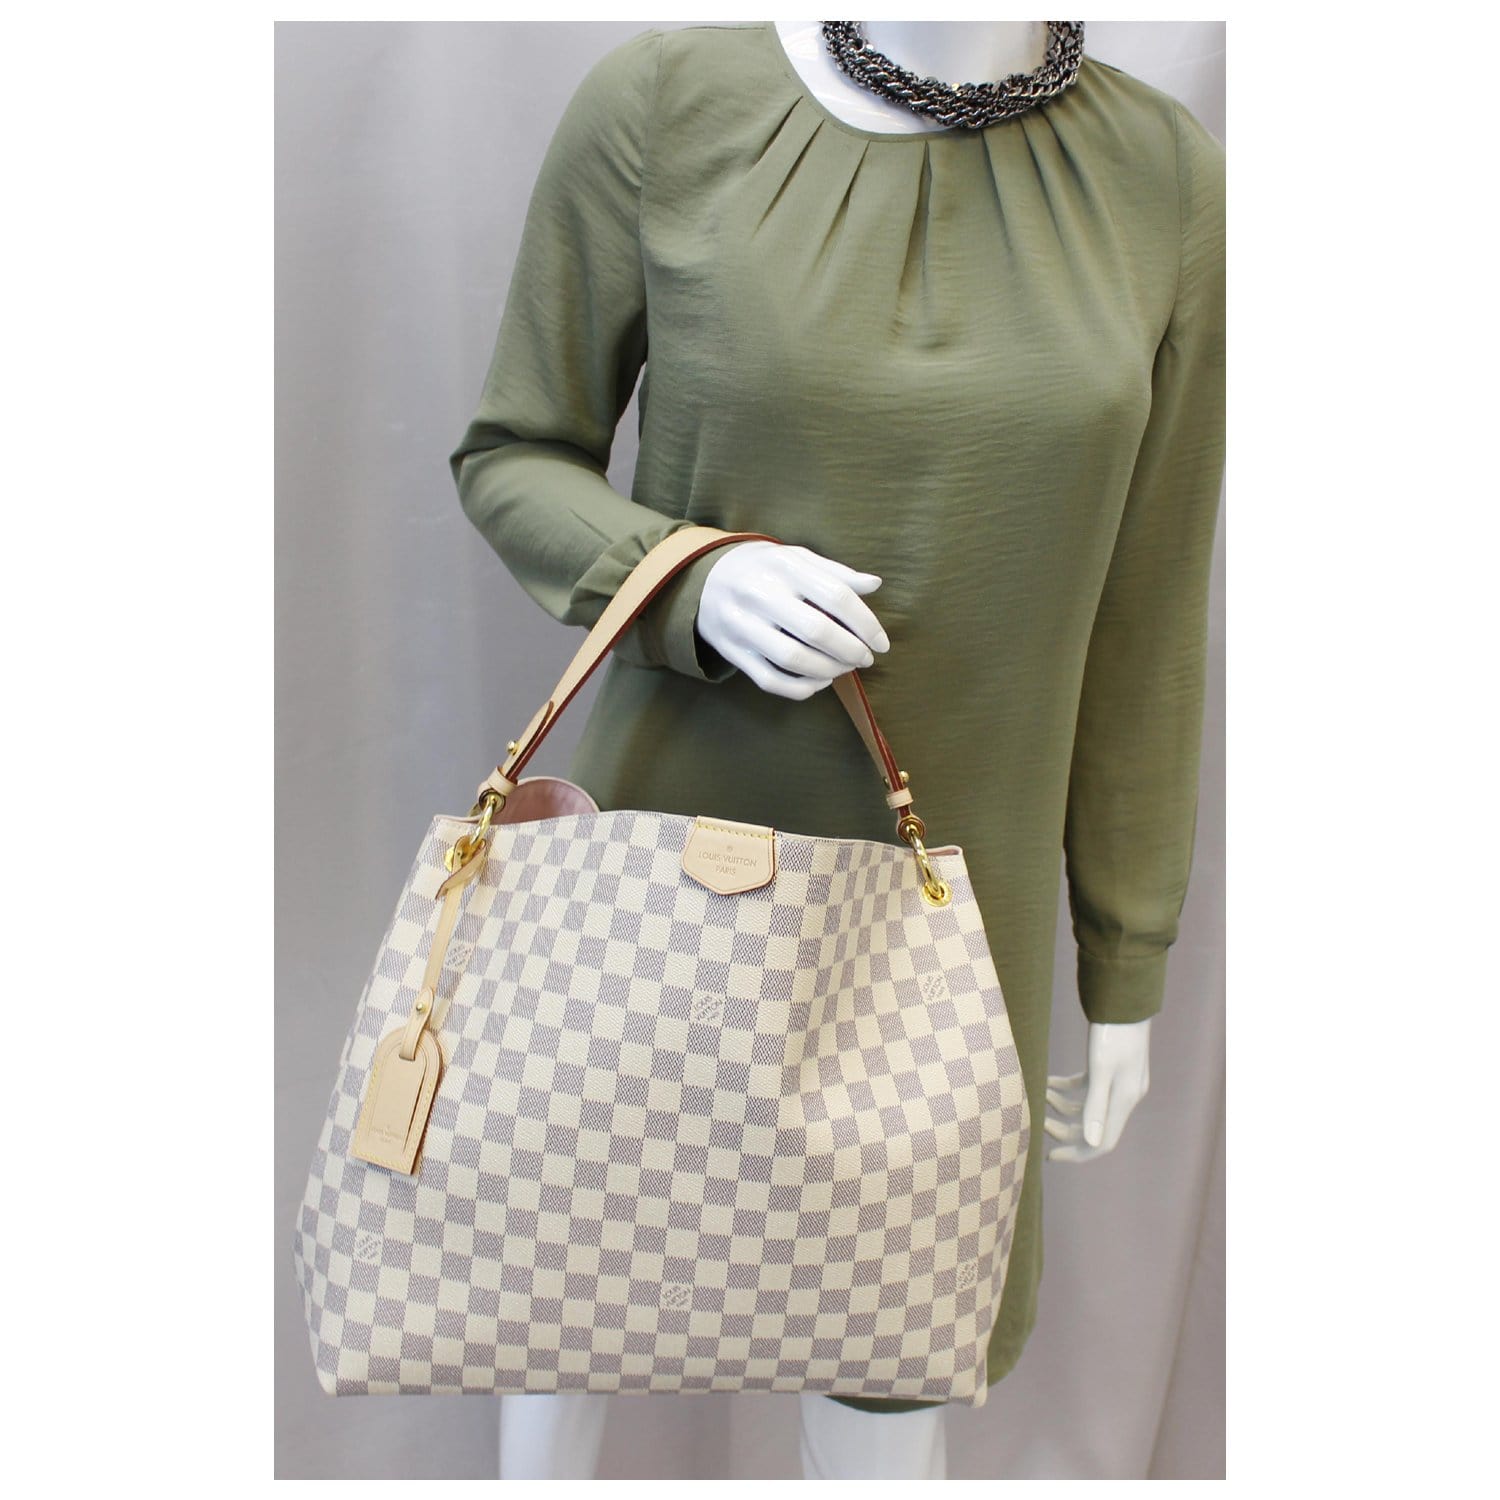 Louis Vuitton Graceful Mm Damier Azur Shoulder Bag Us